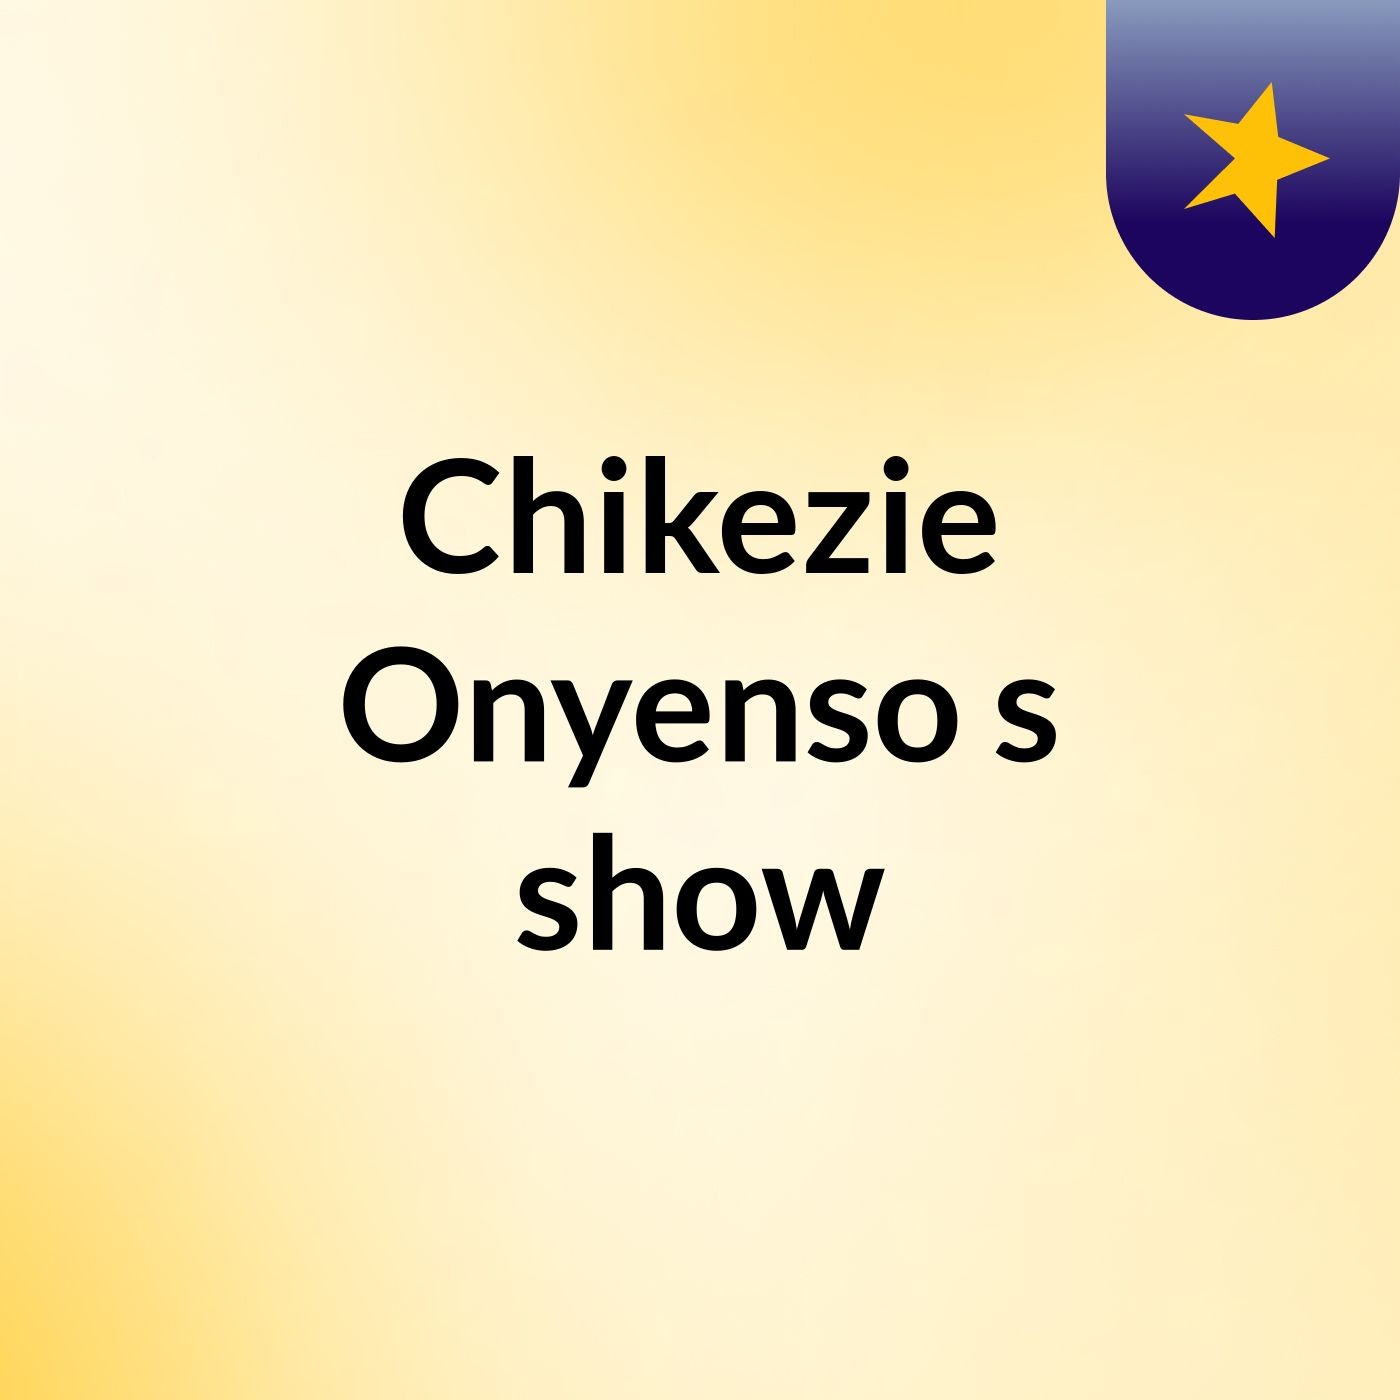 Chikezie Onyenso's show